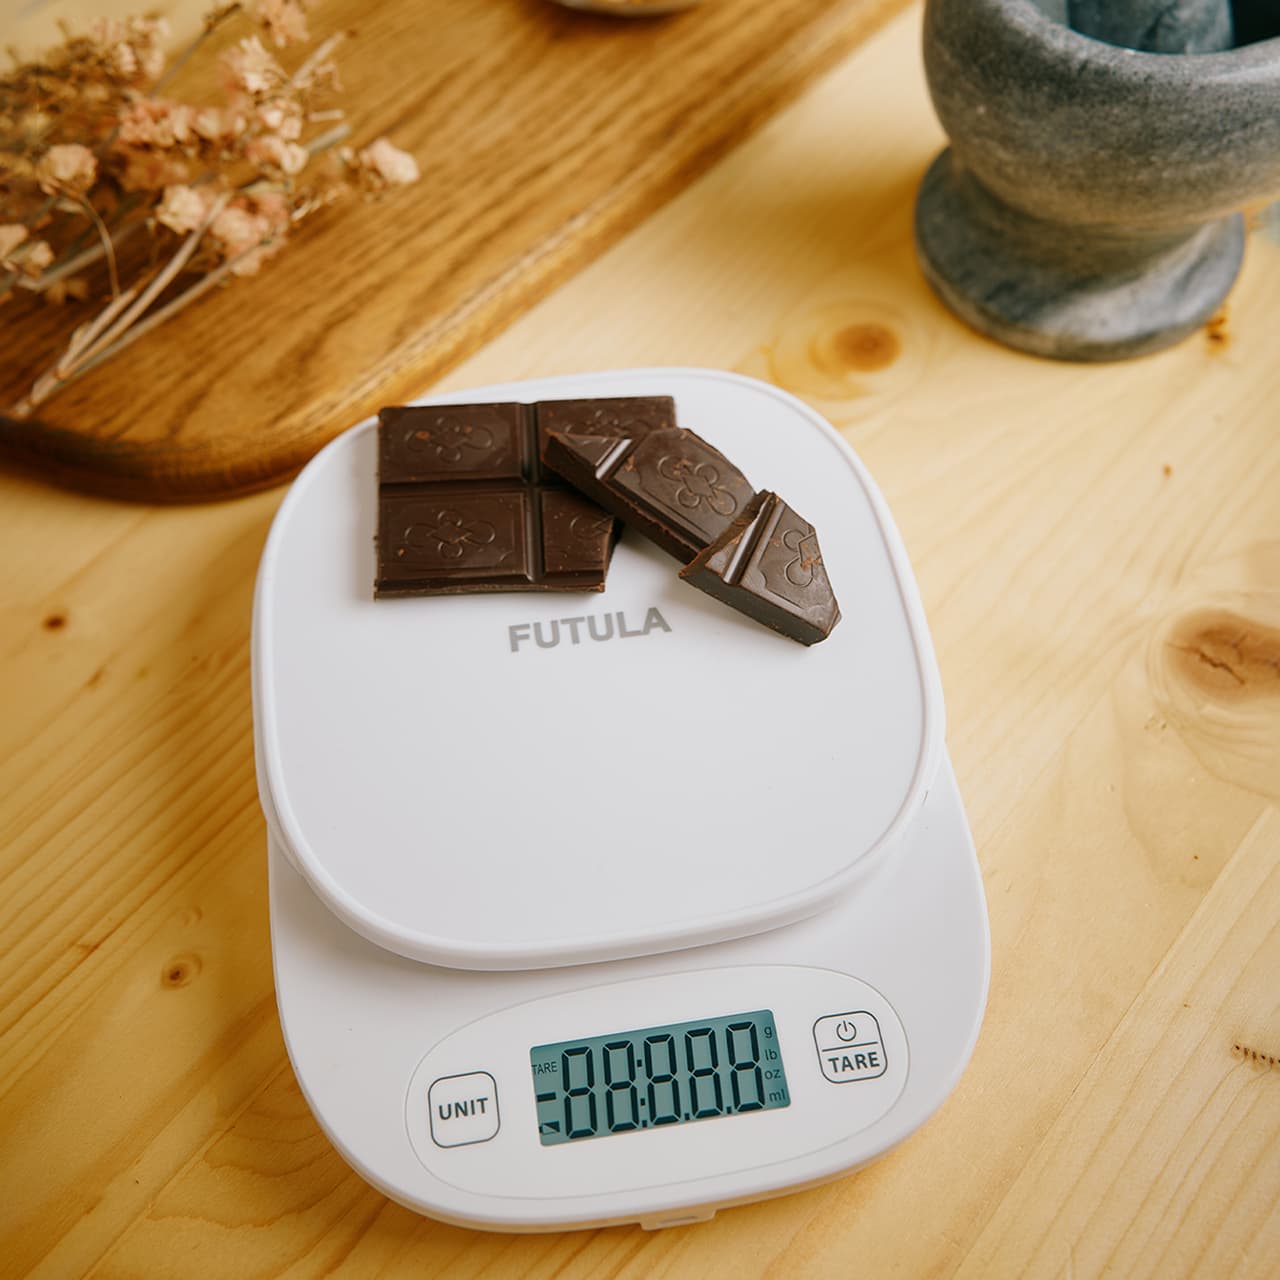 Futula Kitchen Scale 4 способны измерять вес до 5 килограммов с точностью до 0,1 грамма